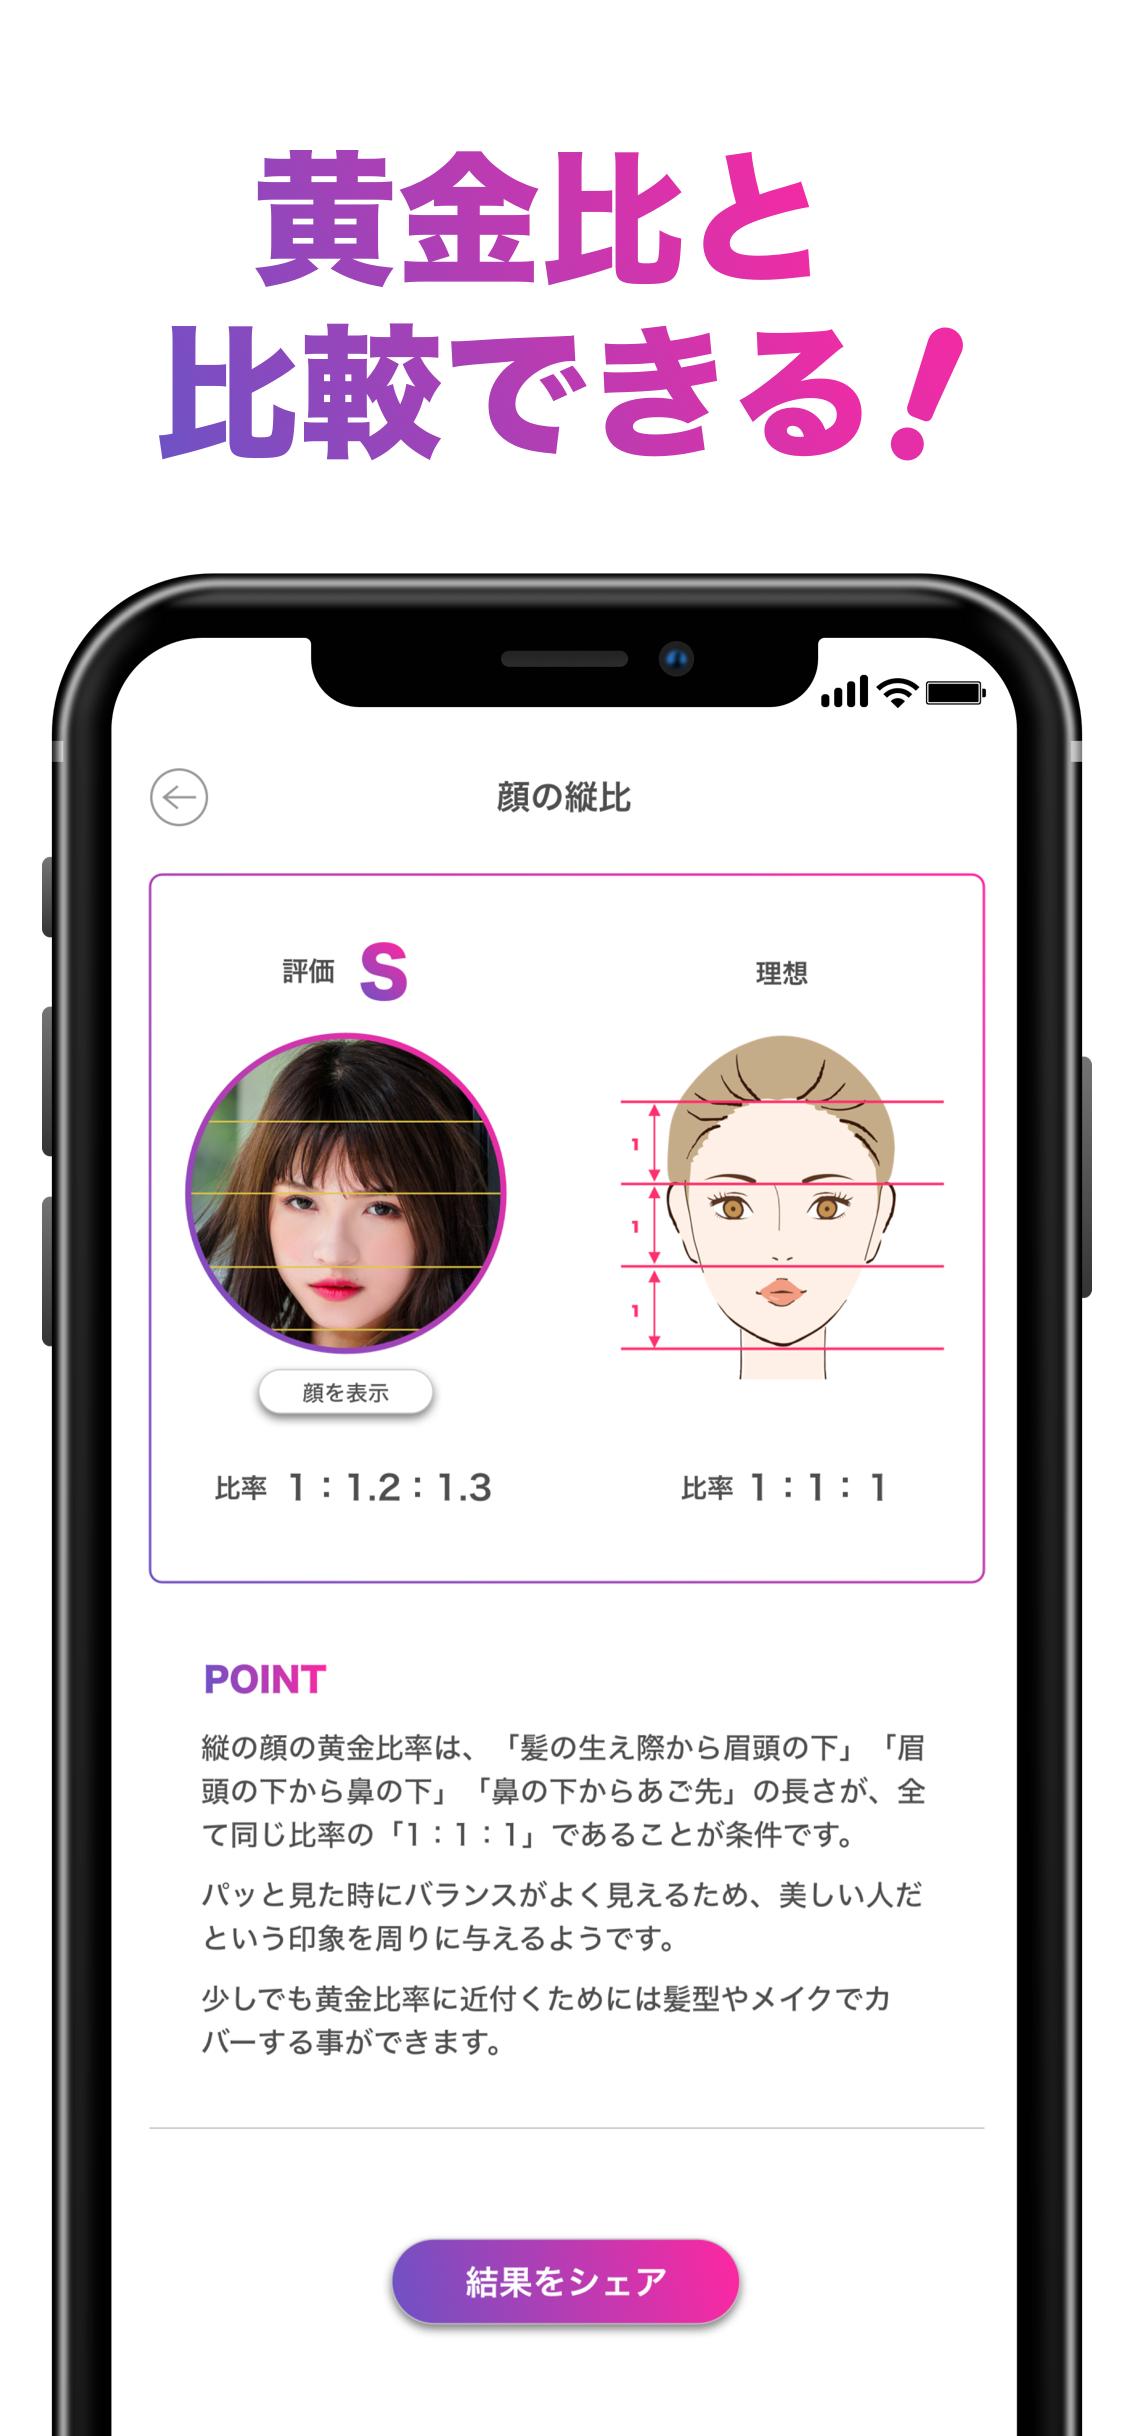 顔のバランスを点数で採点するアプリ Facescore For Android Apk Download